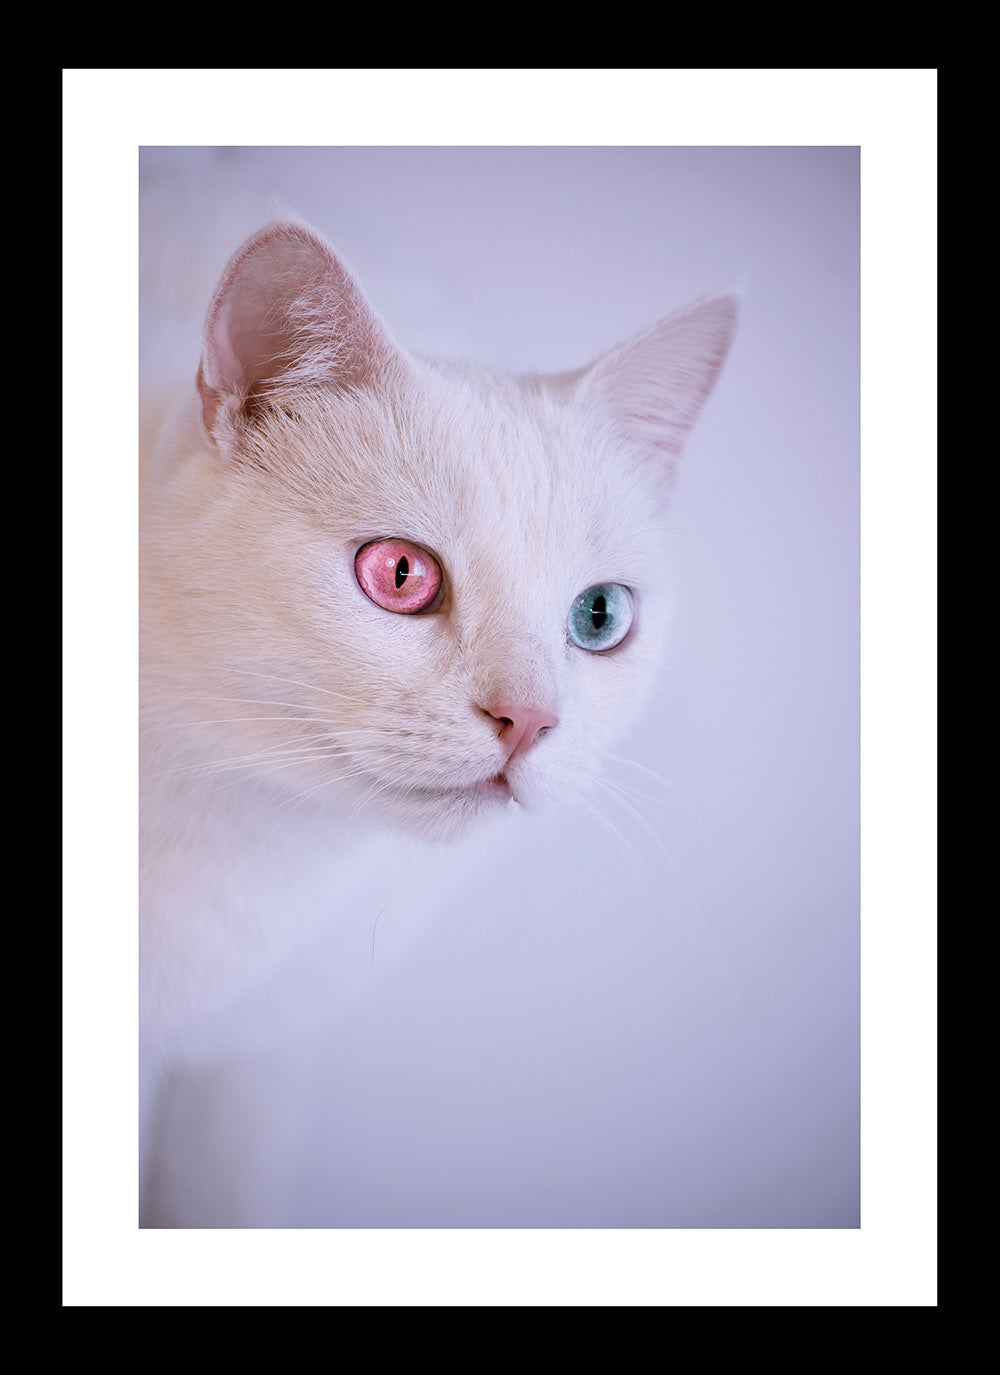 Cats with heterochromia iris